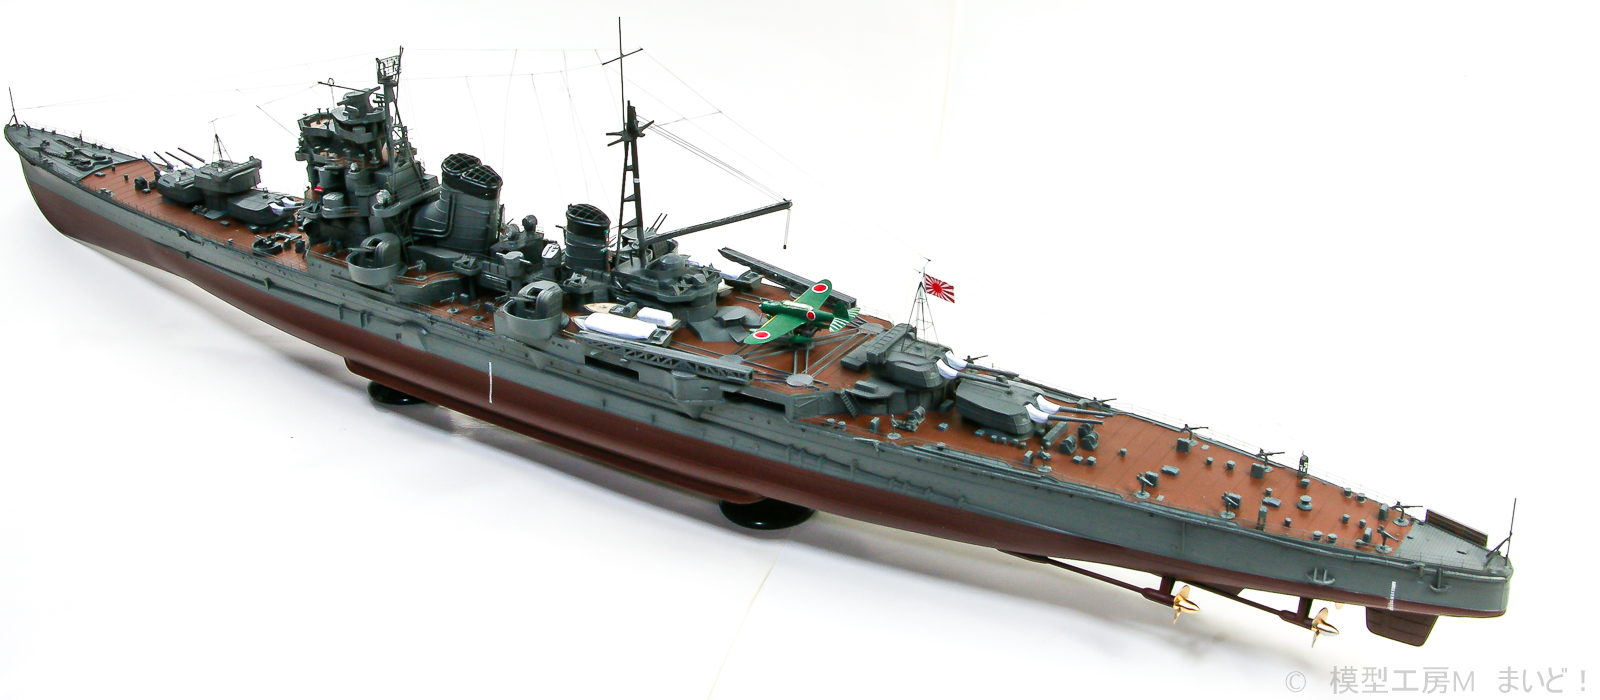 アオシマ 1/350 日本海軍重巡洋艦「足柄」 完成 AOSHIMA ASHIGARA 模型工房M